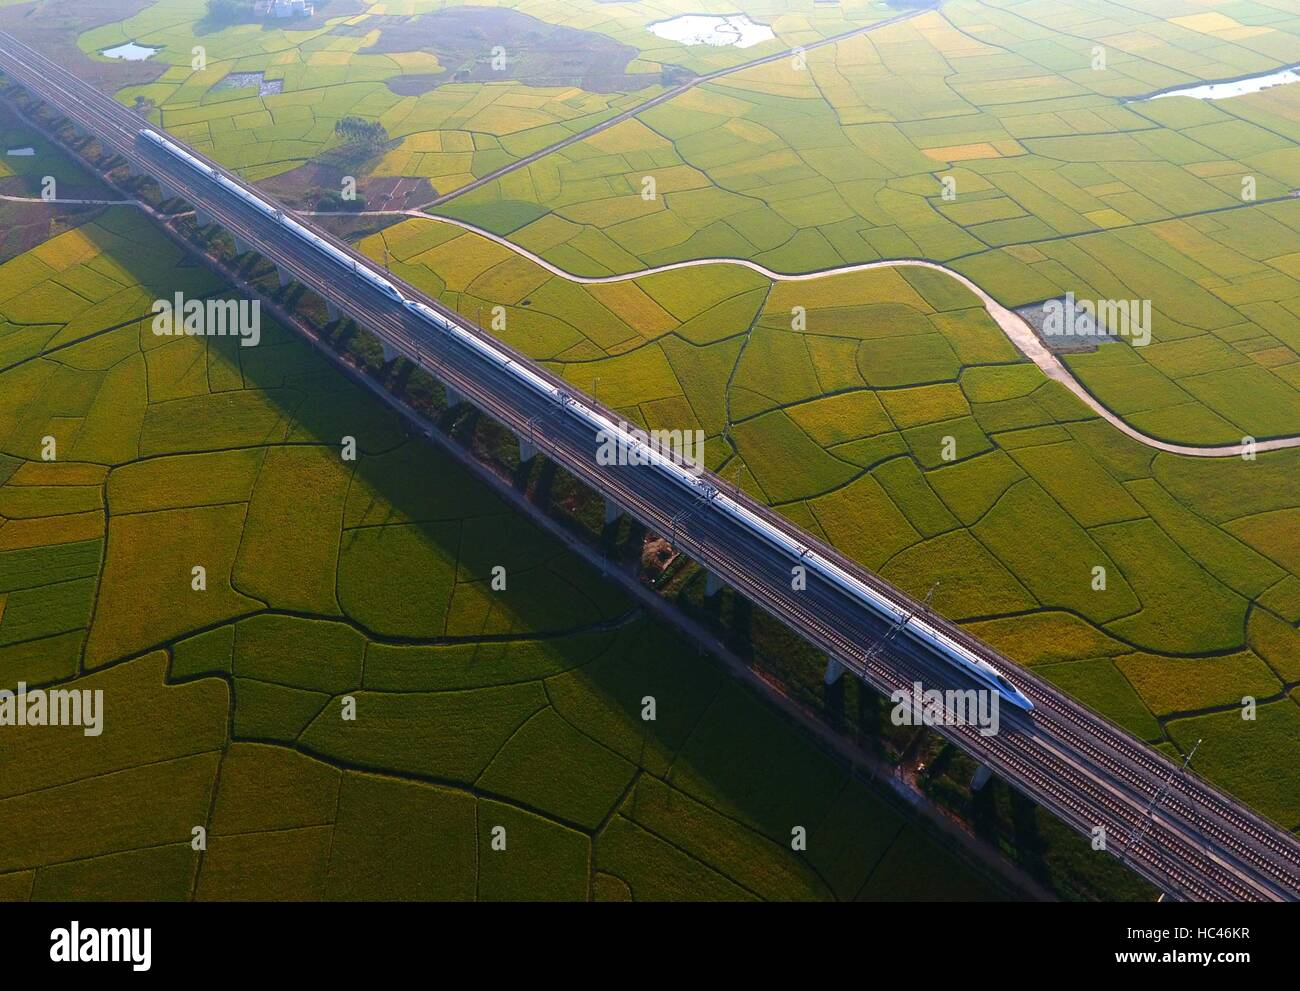 Pechino, Cina Guangxi Zhuang Regione autonoma. Xvi oct, 2016. Un treno ad alta velocità attraversa terreni agricoli in Binyang contea di Nanning, capitale del sud della Cina di Guangxi Zhuang Regione autonoma, 16 ottobre 2016. Della Cina di treni ad alta velocità ha superato 20.000 chilometri di lunghezza da settembre di quest'anno. La Cina ha realizzato considerevoli progressi nel promuovere lo sviluppo scientifico e tecnologico nel 2016. © Huang Xiaobang/Xinhua/Alamy Live News Foto Stock